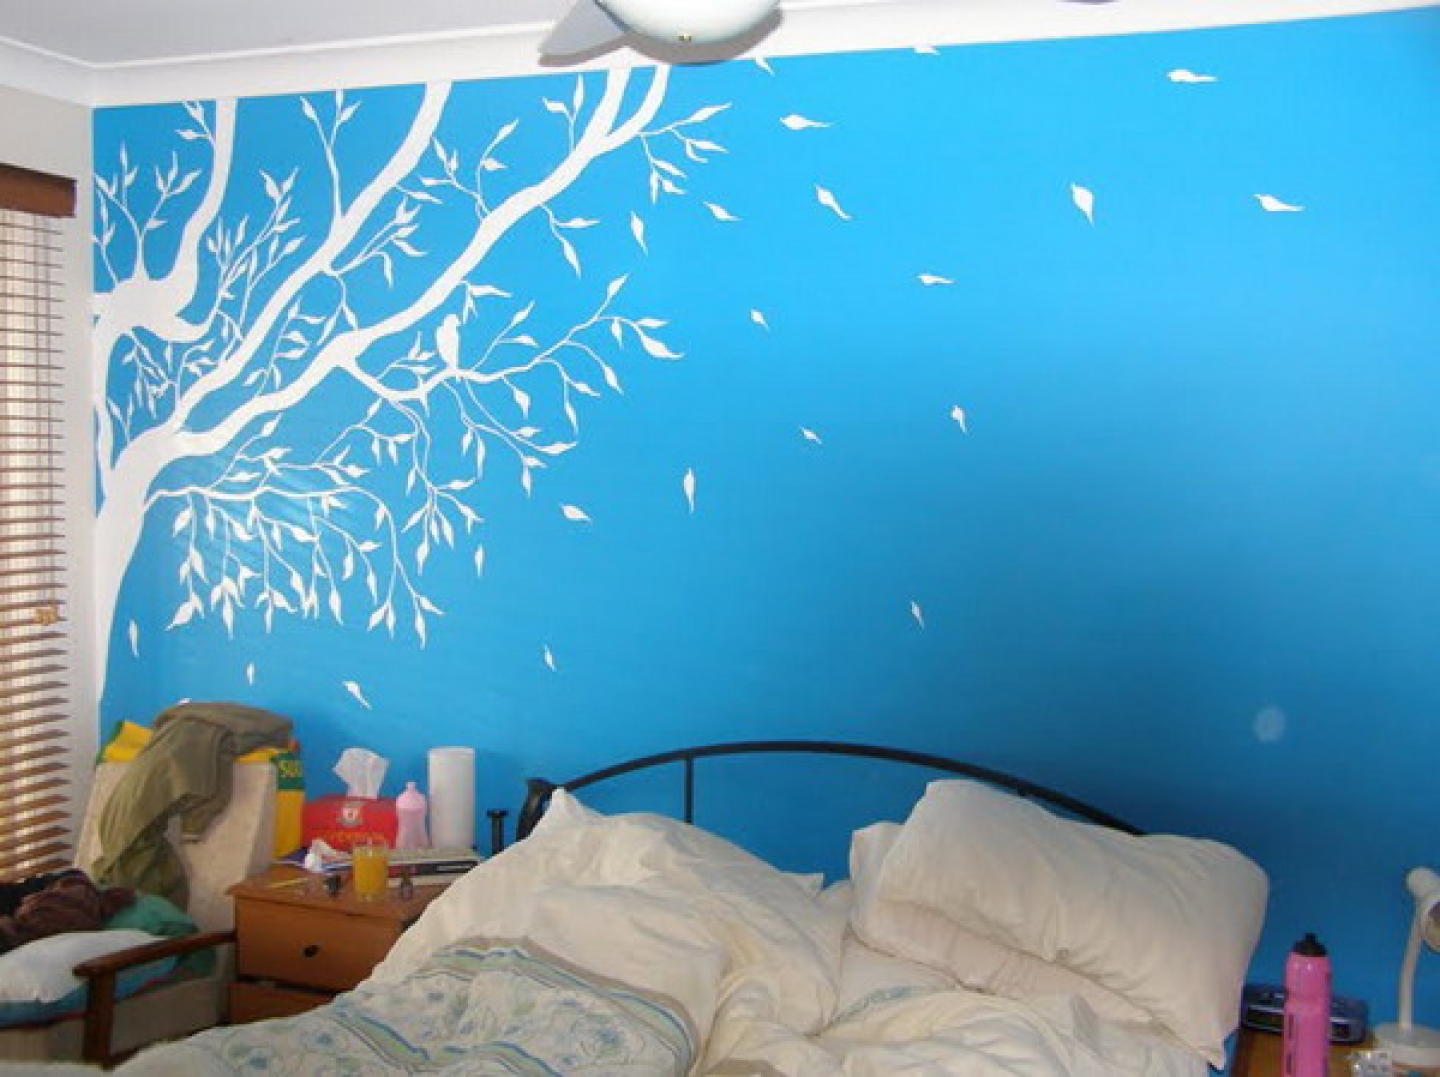 Free Download Teenage Bedroom Color Scheme Wall Murals Ideas